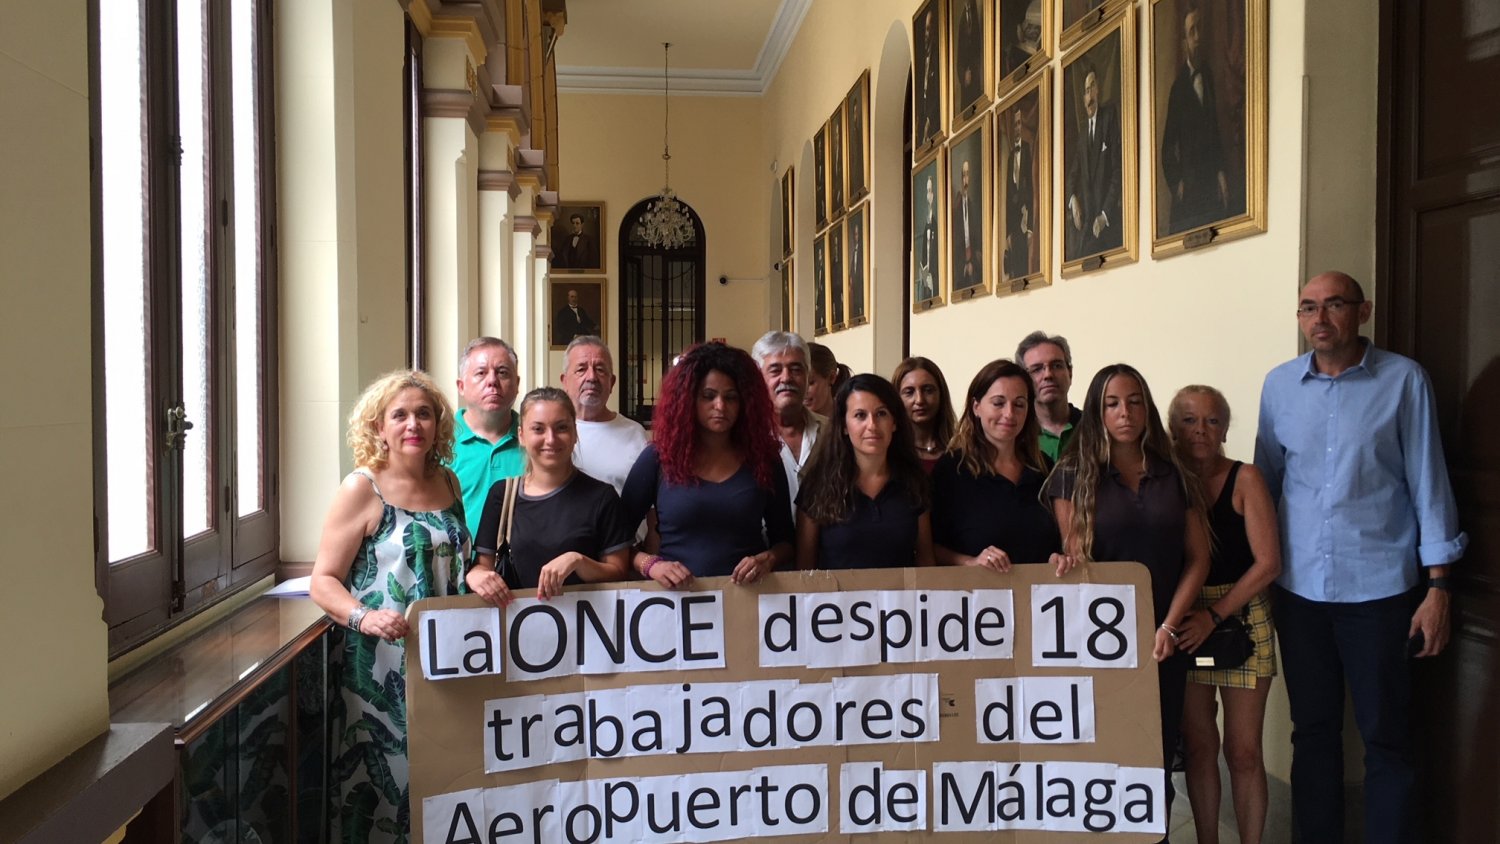 Málaga Para la Gente y CC.OO denuncian el despido de 18 trabajadores auxiliares del Aeropuerto de Málaga